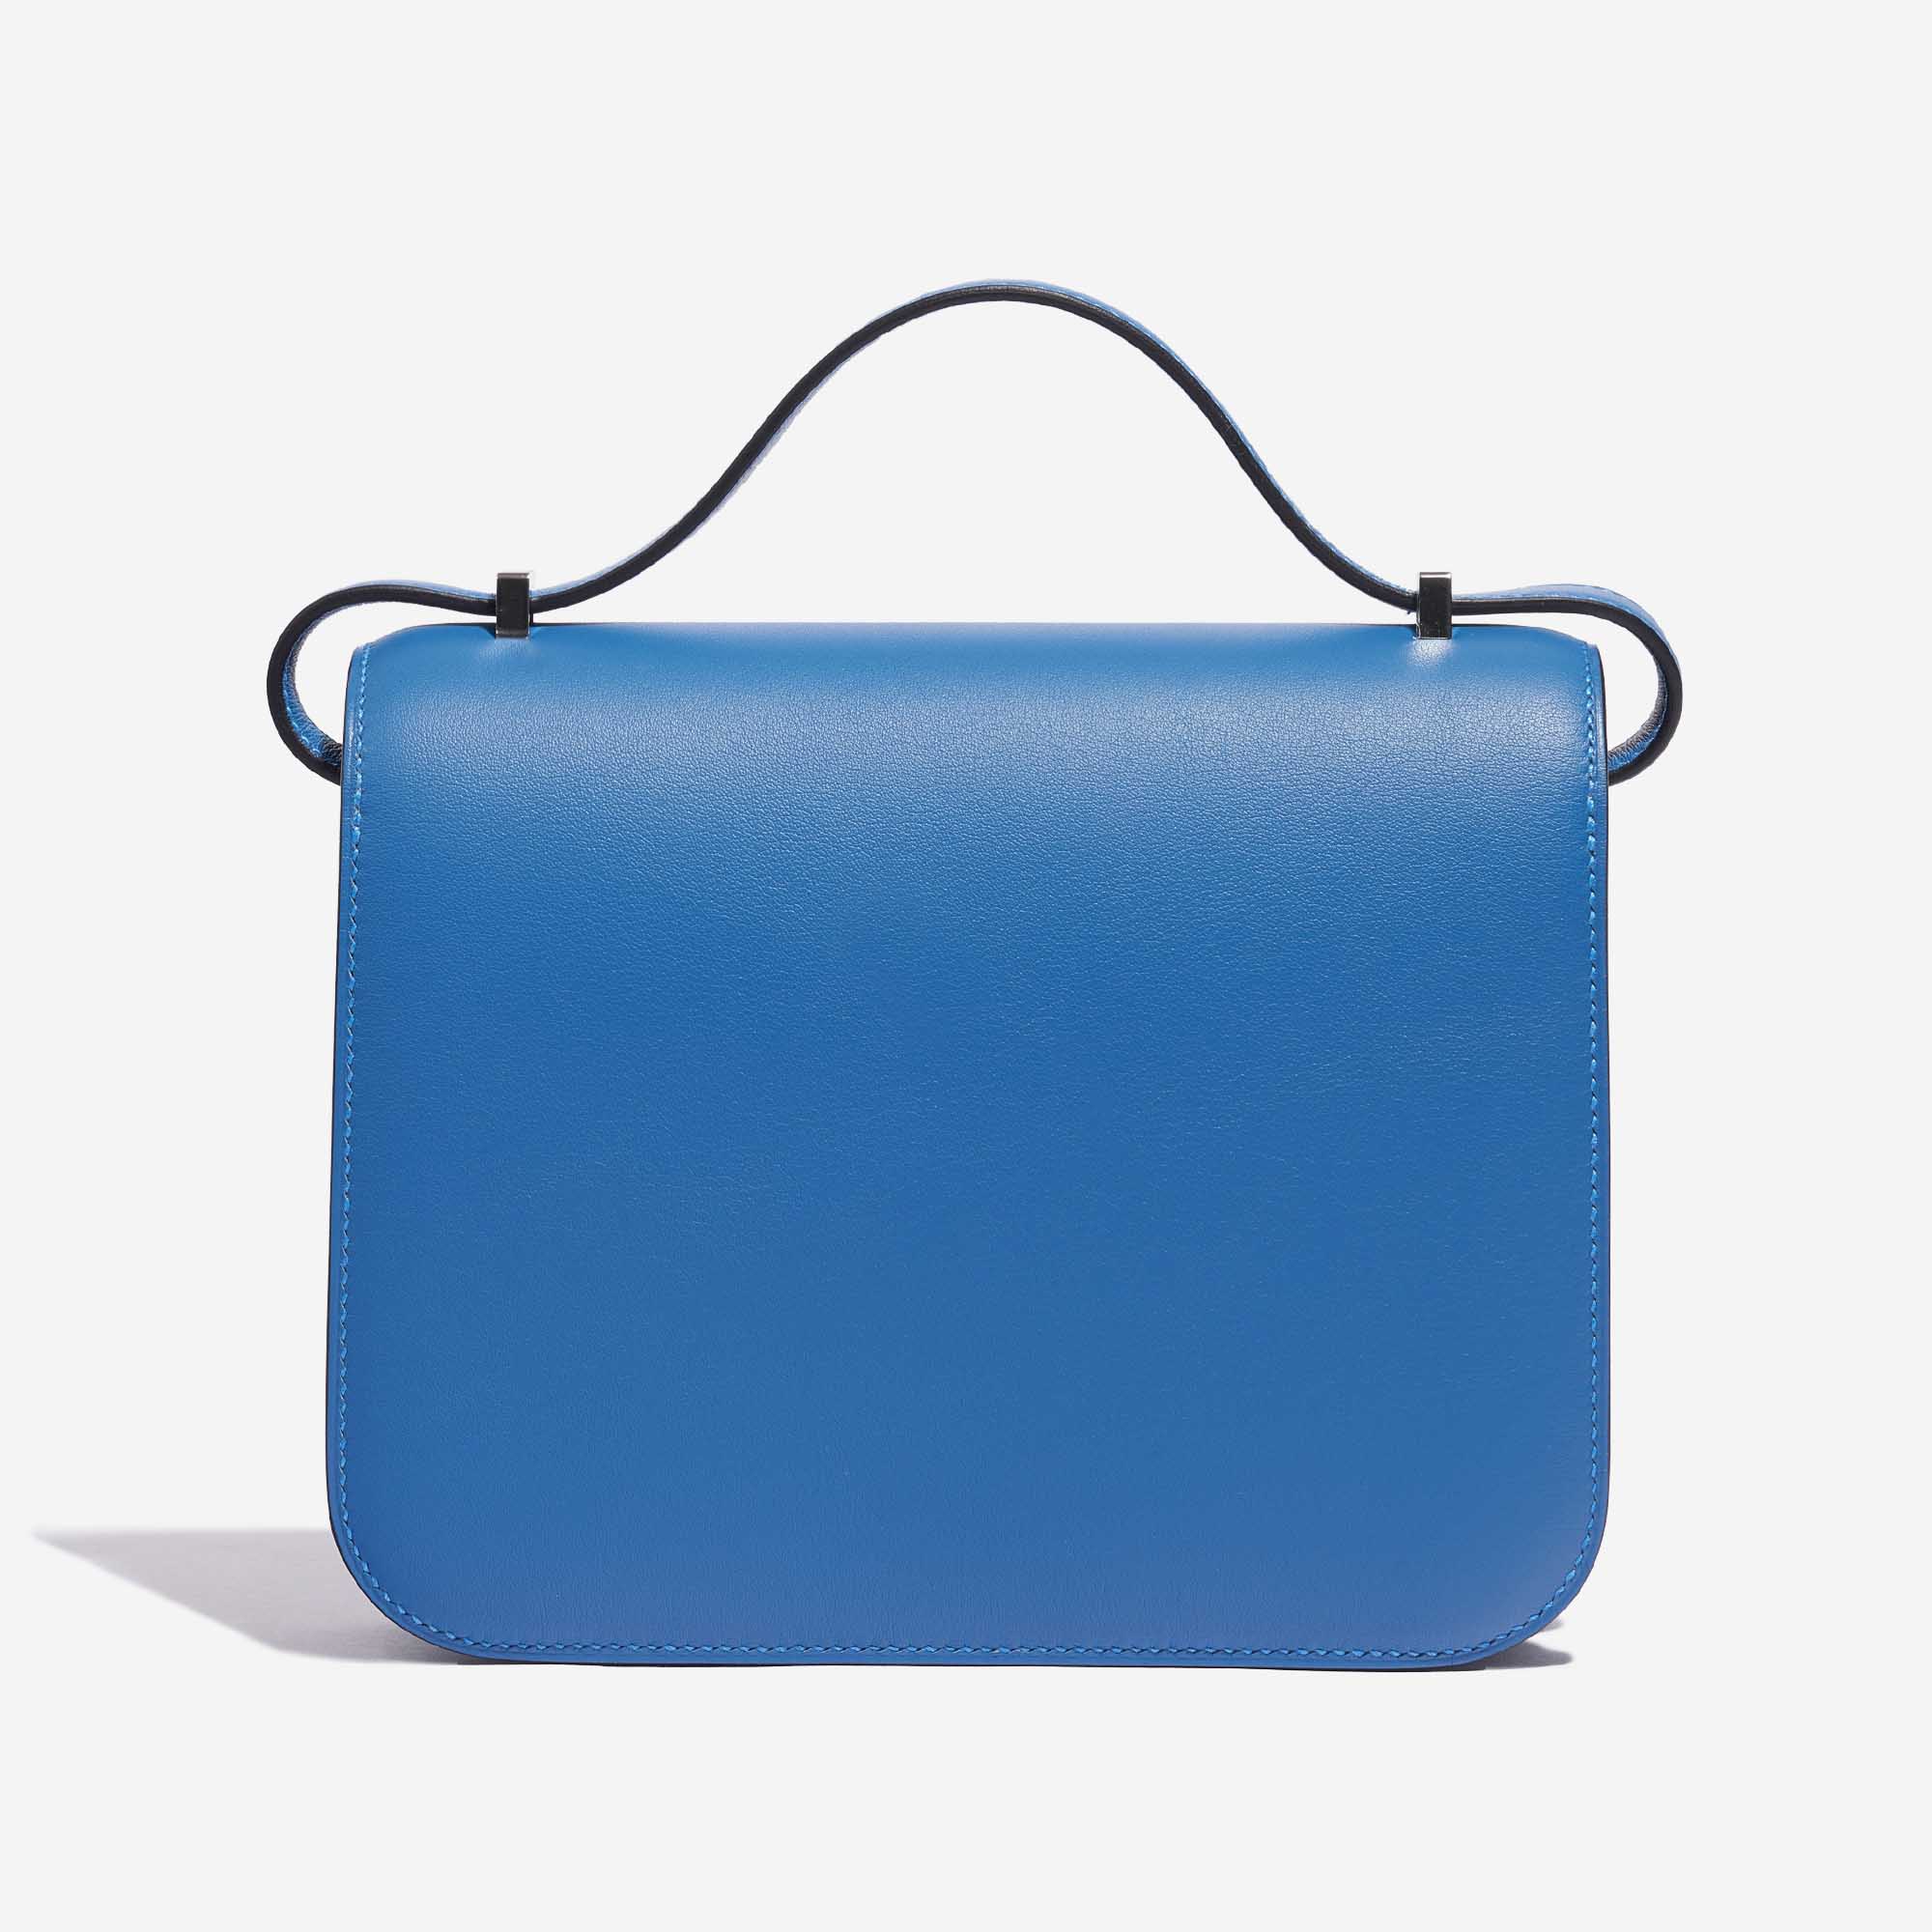 Sac Hermès d'occasion Constance 18 Swift Bleu Mykonos / Bleu Encre Bleu Back | Vendez votre sac de créateur sur Saclab.com